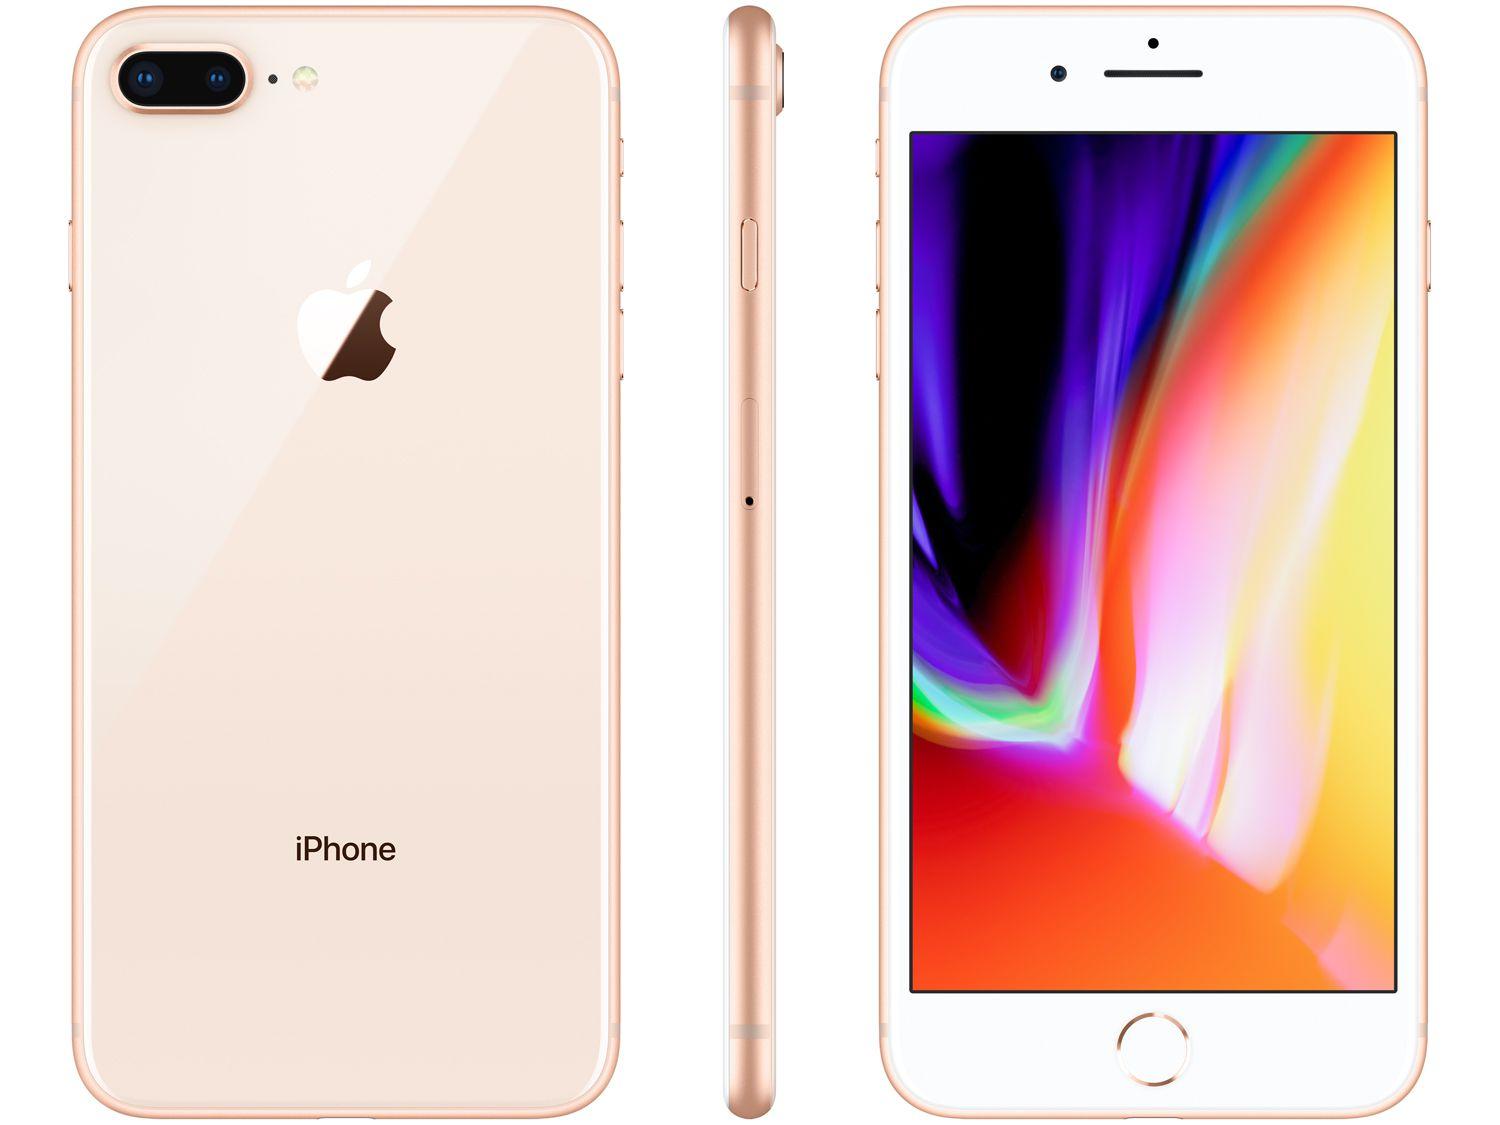 iPhone 8 Plus Apple 256GB Dourado 5,5” 12MP iOS iPhone 8 e 8 Plus